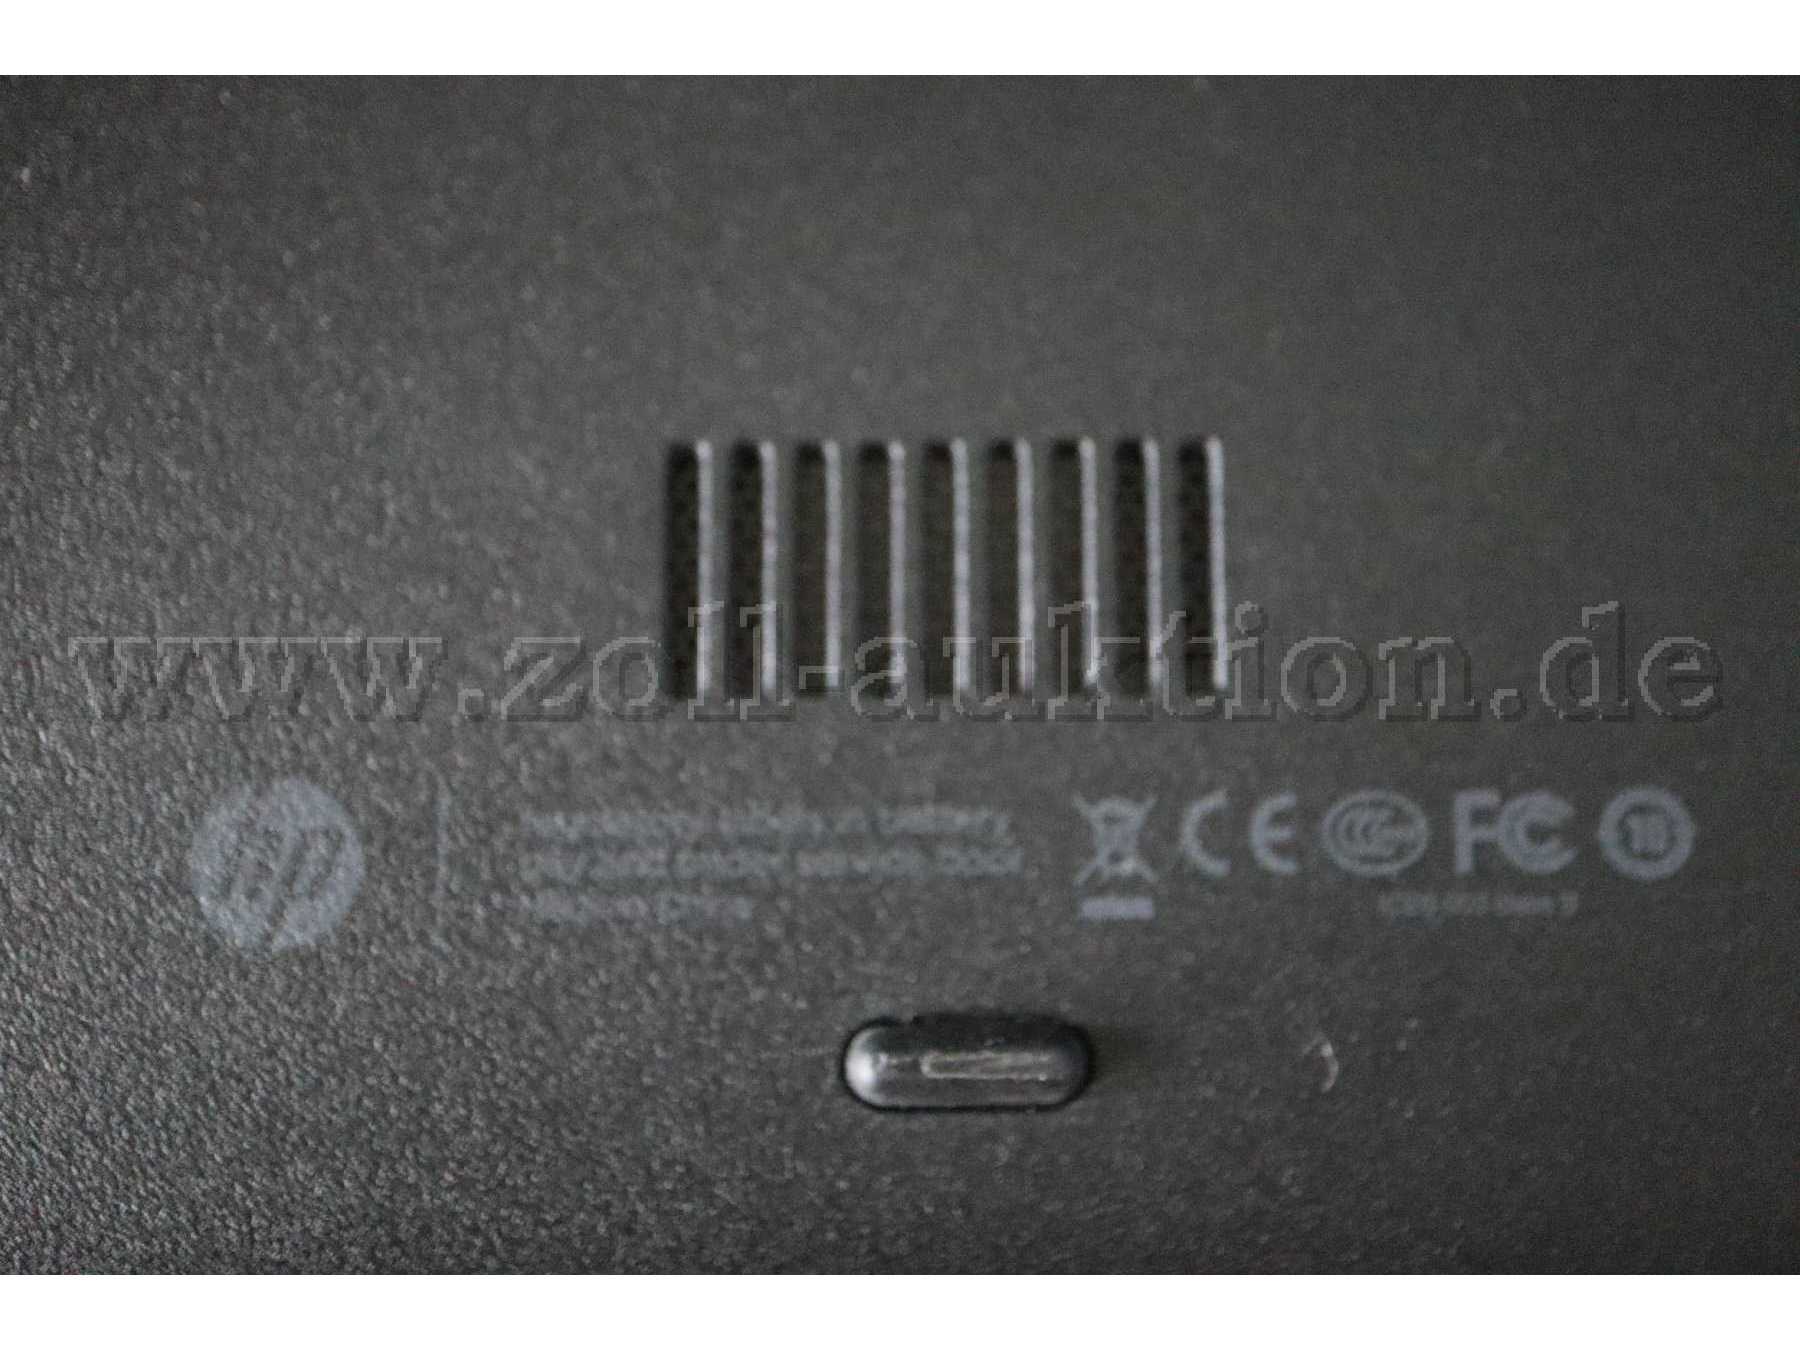 Notebook HP Probook 640G1 Detailansicht